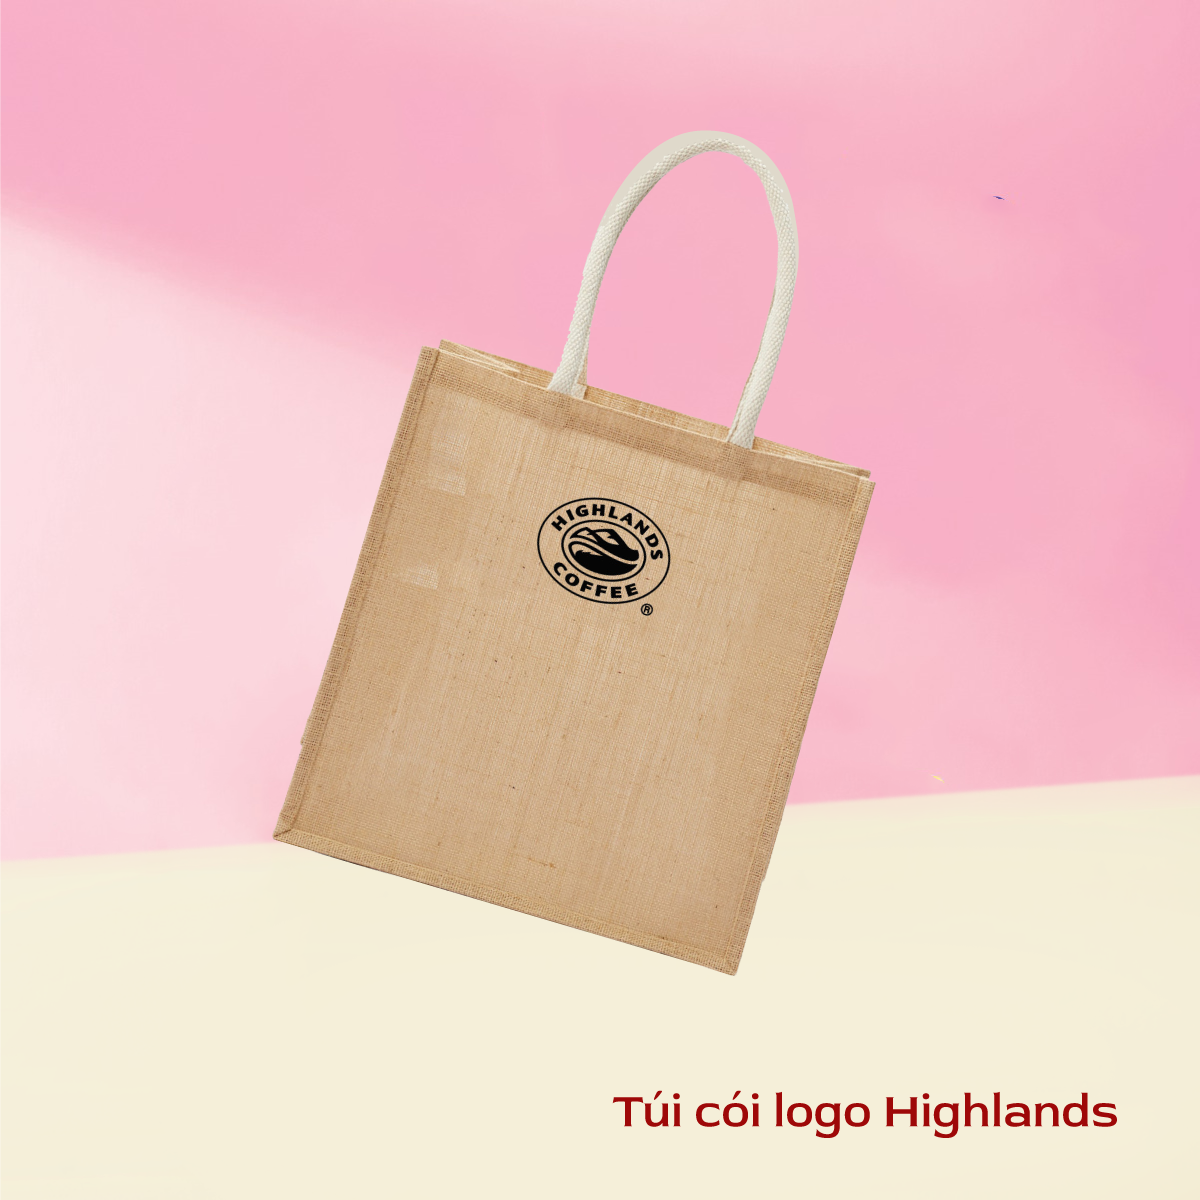 [Quà tặng] Túi cói logo Highlands thời trang